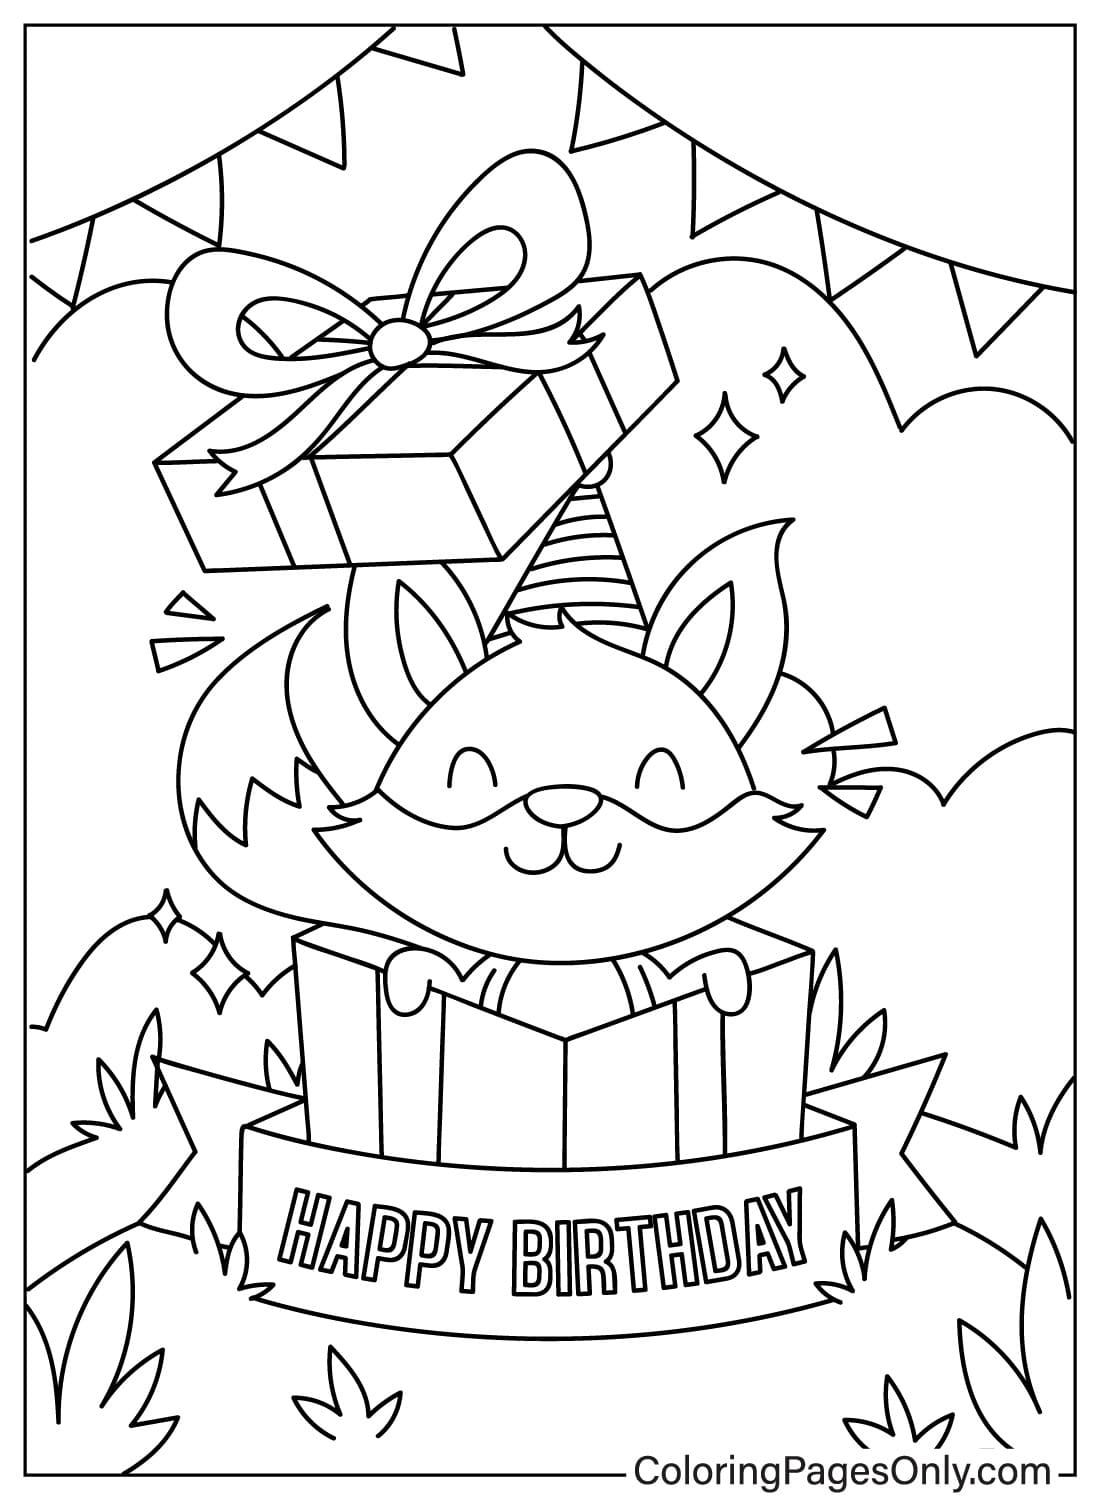 Imagens de cartão de feliz aniversário para colorir do cartão de feliz aniversário